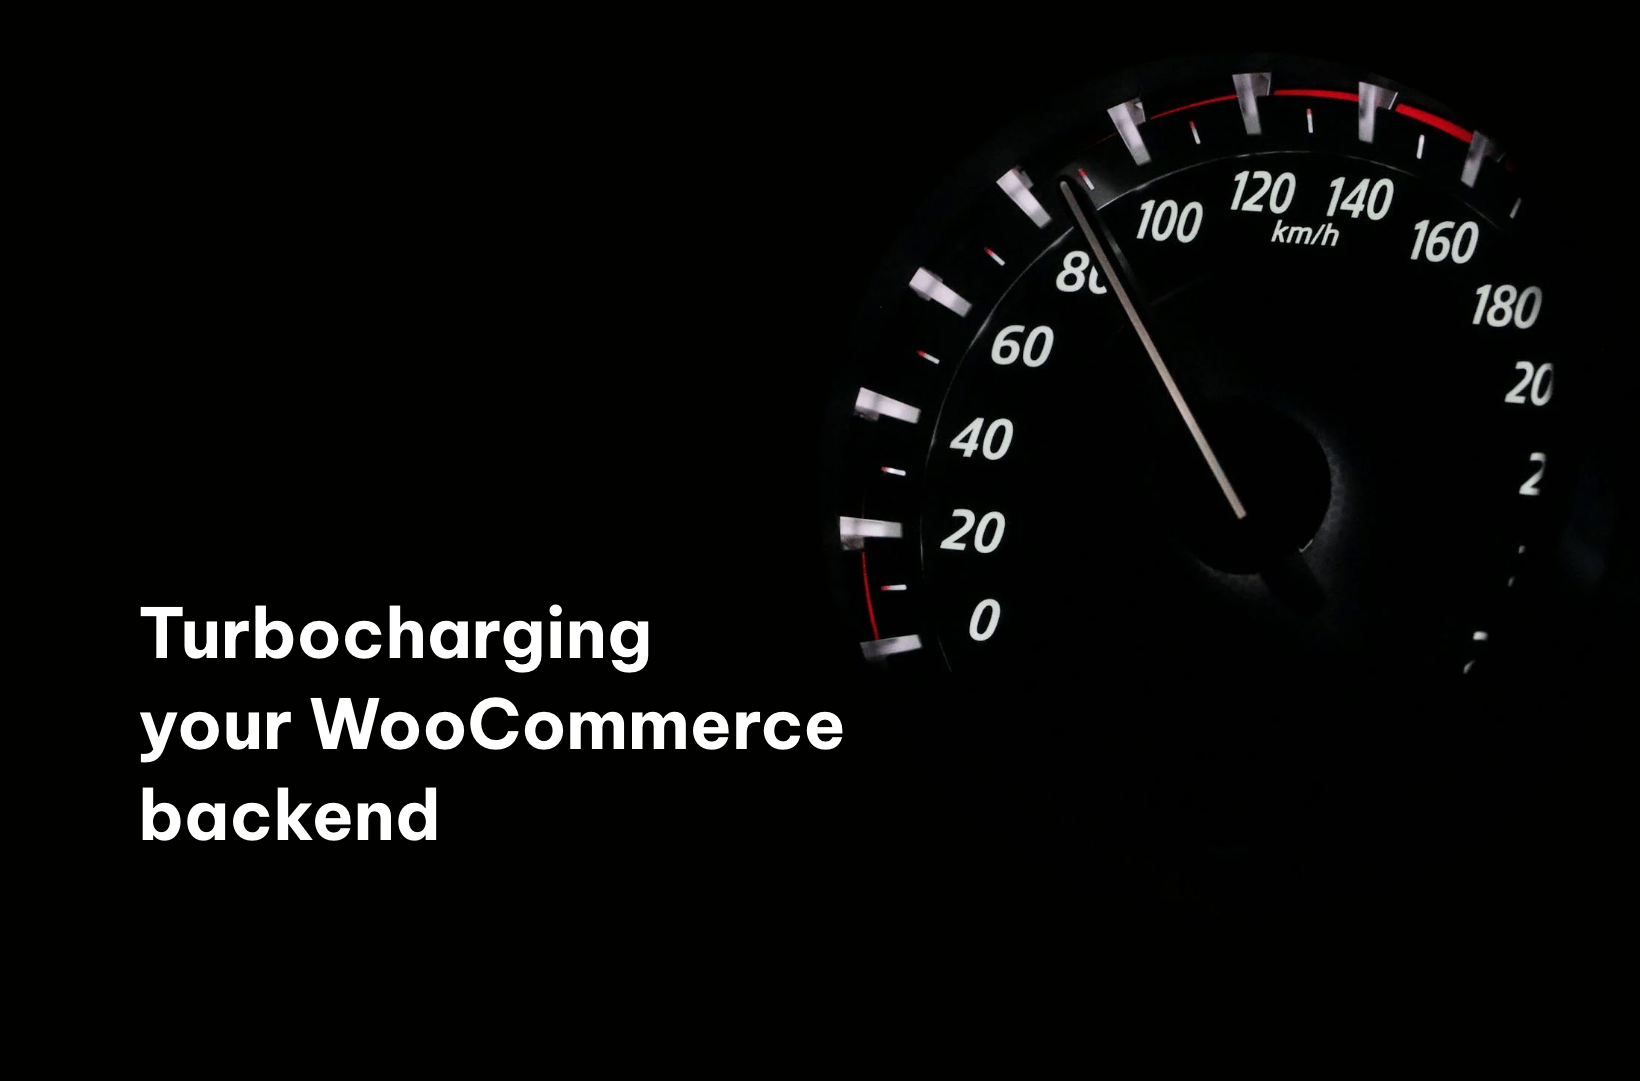 Turbocharging your WooCommerce backend